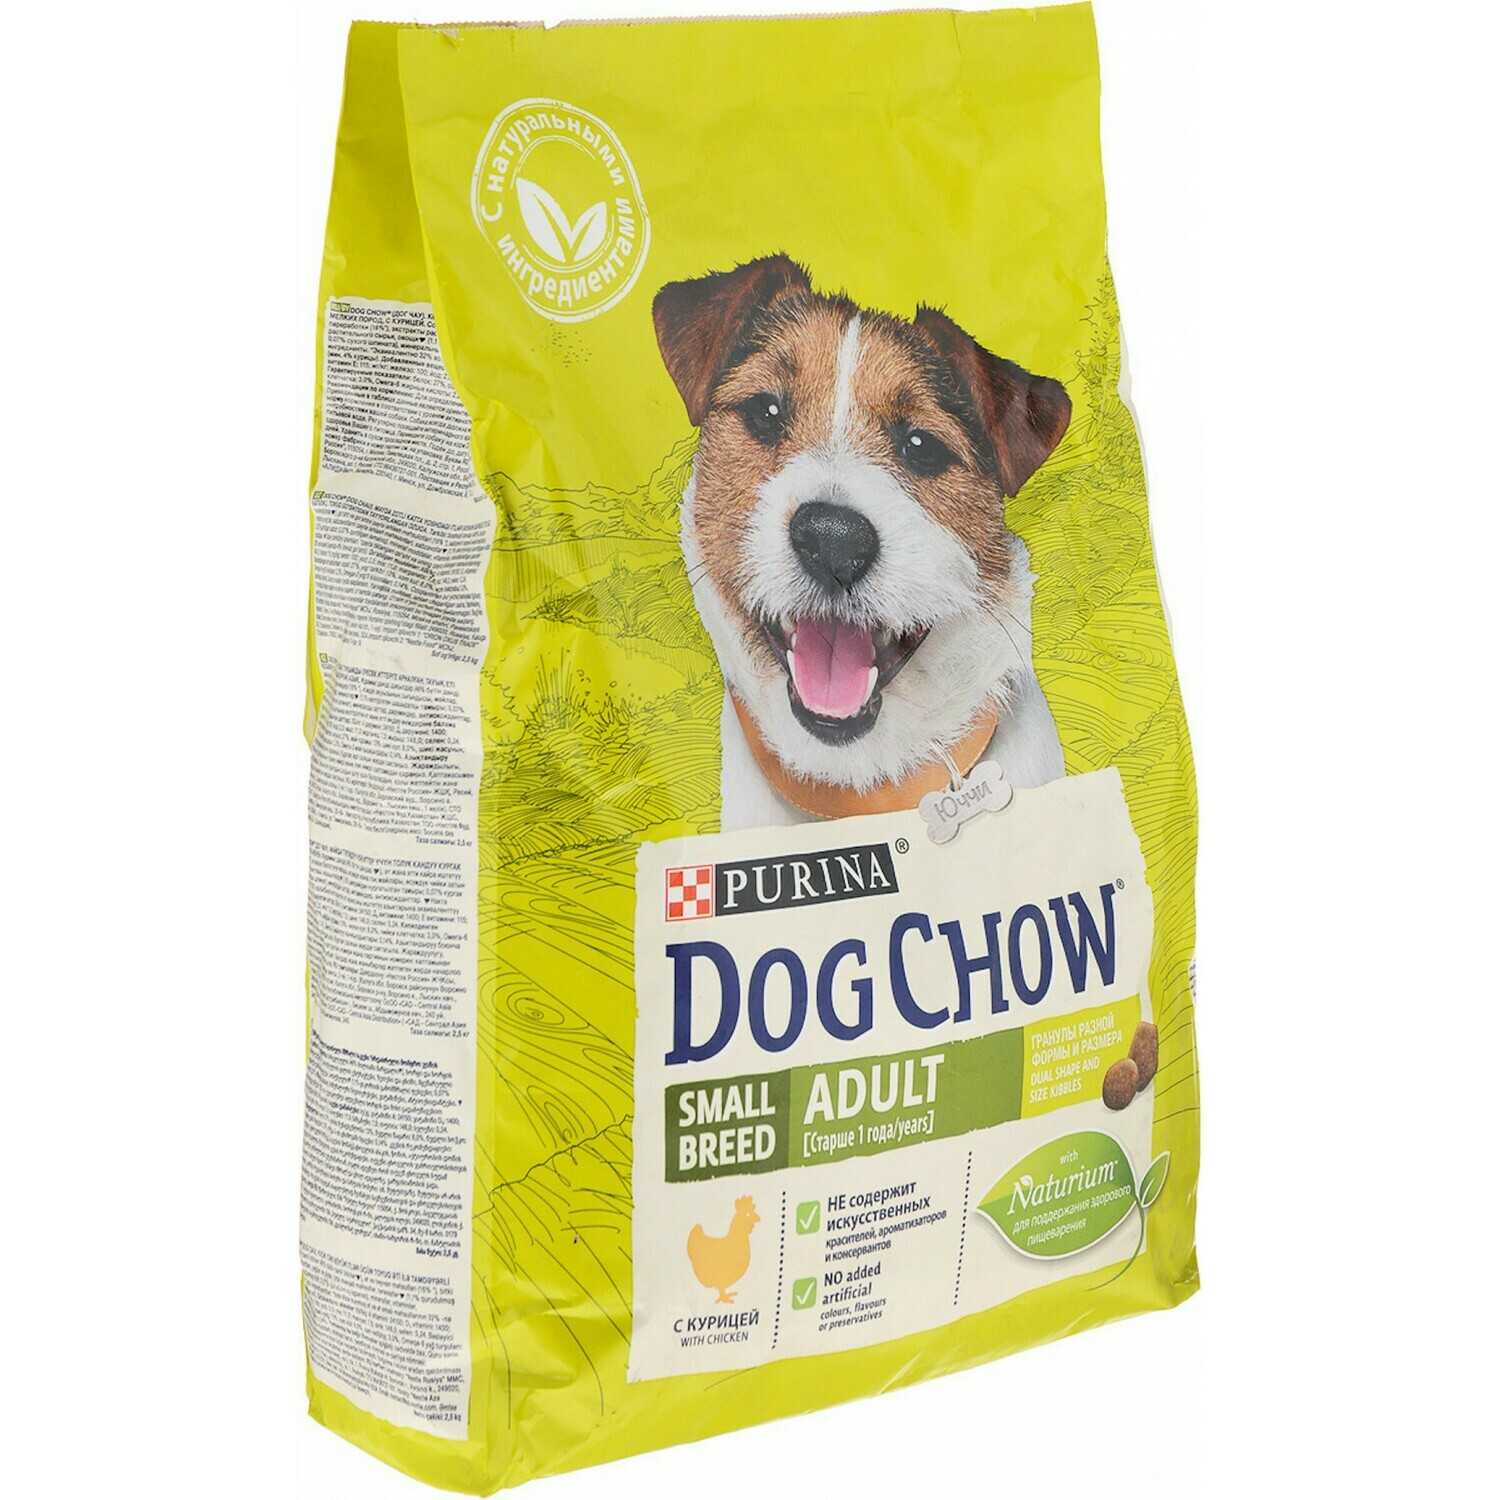 Сухие корма для собак магазин. Dog Chow корм для щенков. Корм для собак дог чау для щенков. Dog Chow курица корм для собак. Корм для щенков Dog Chow курица 2.5 кг.